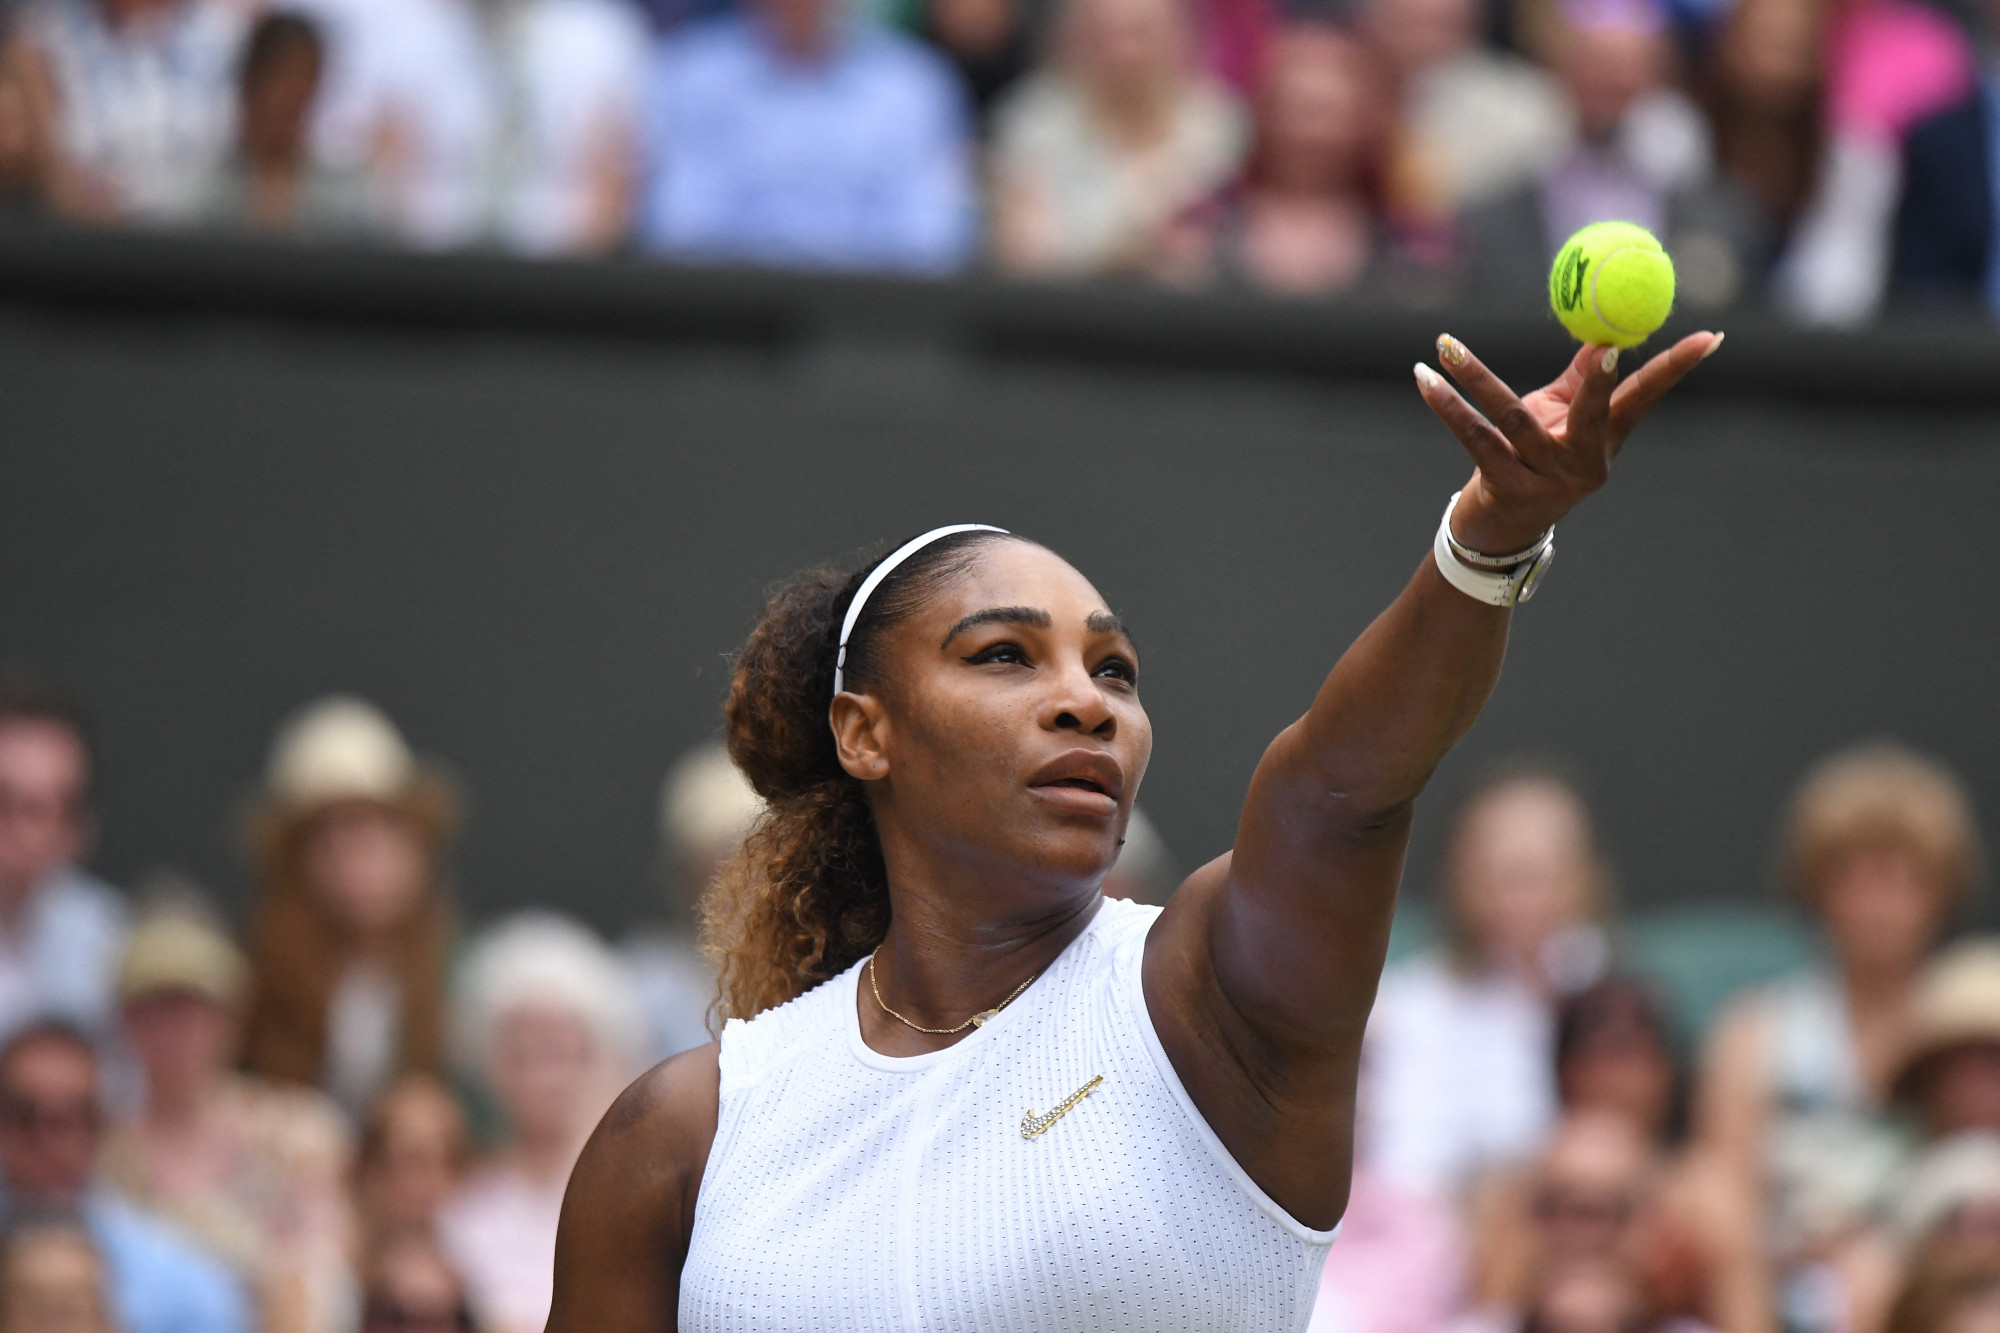 "Elfejlődik a tenisztől" - jelentette be Serena Williams, ezzel valószínűleg a visszavonulására utalva